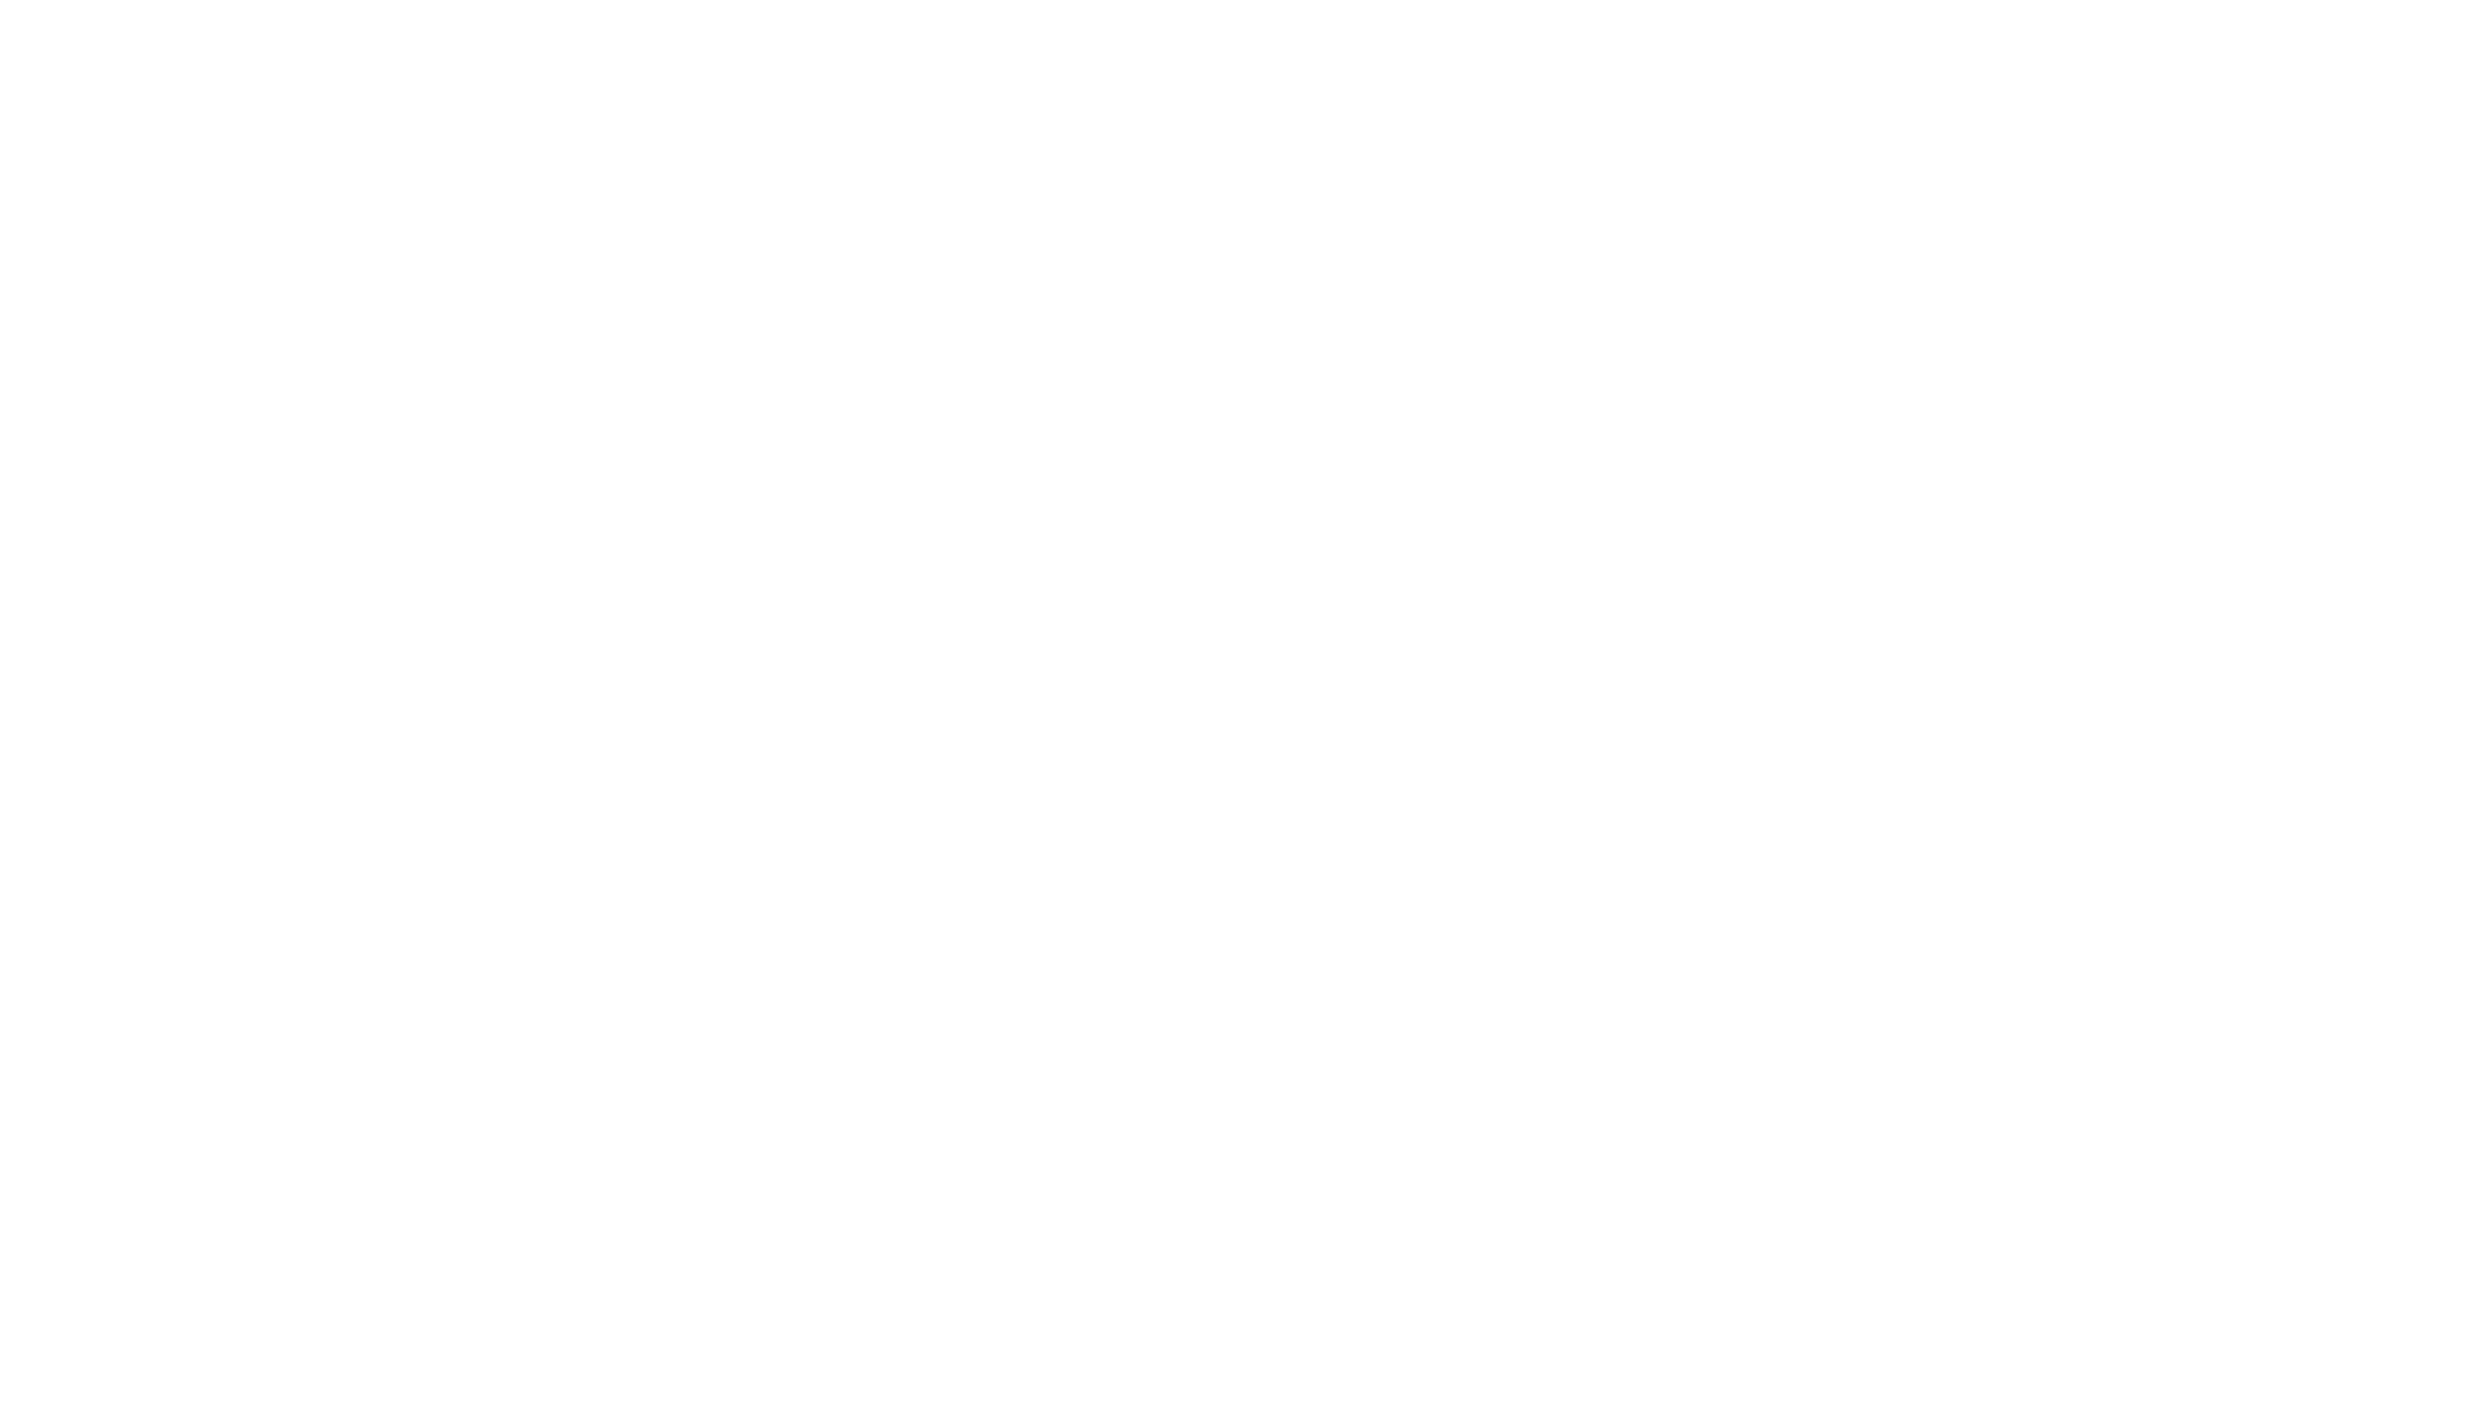 Dennis Nutz Photography